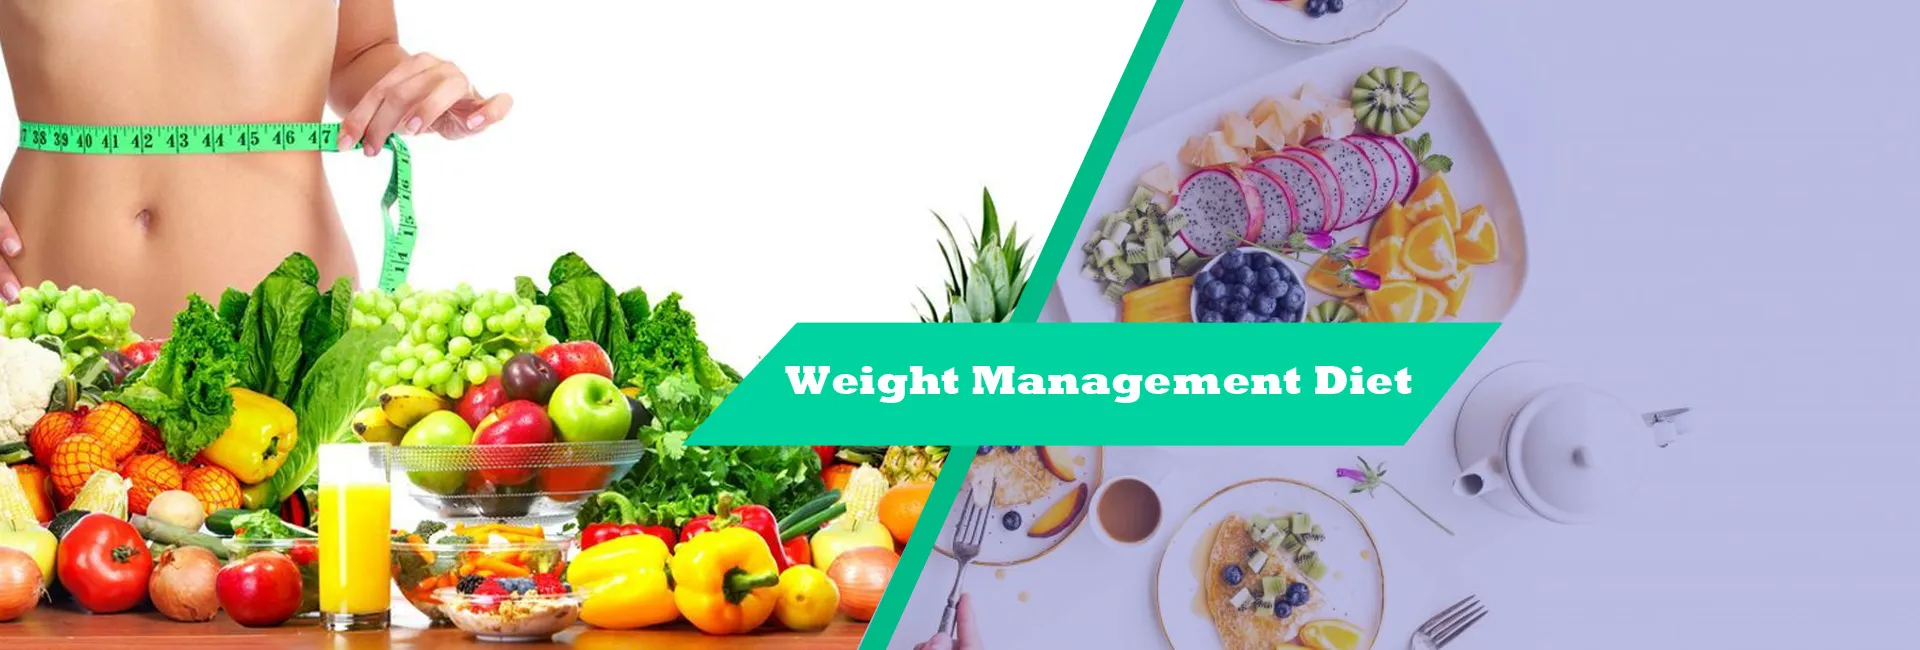 Weight Management Diet In Ras Al Khaimah